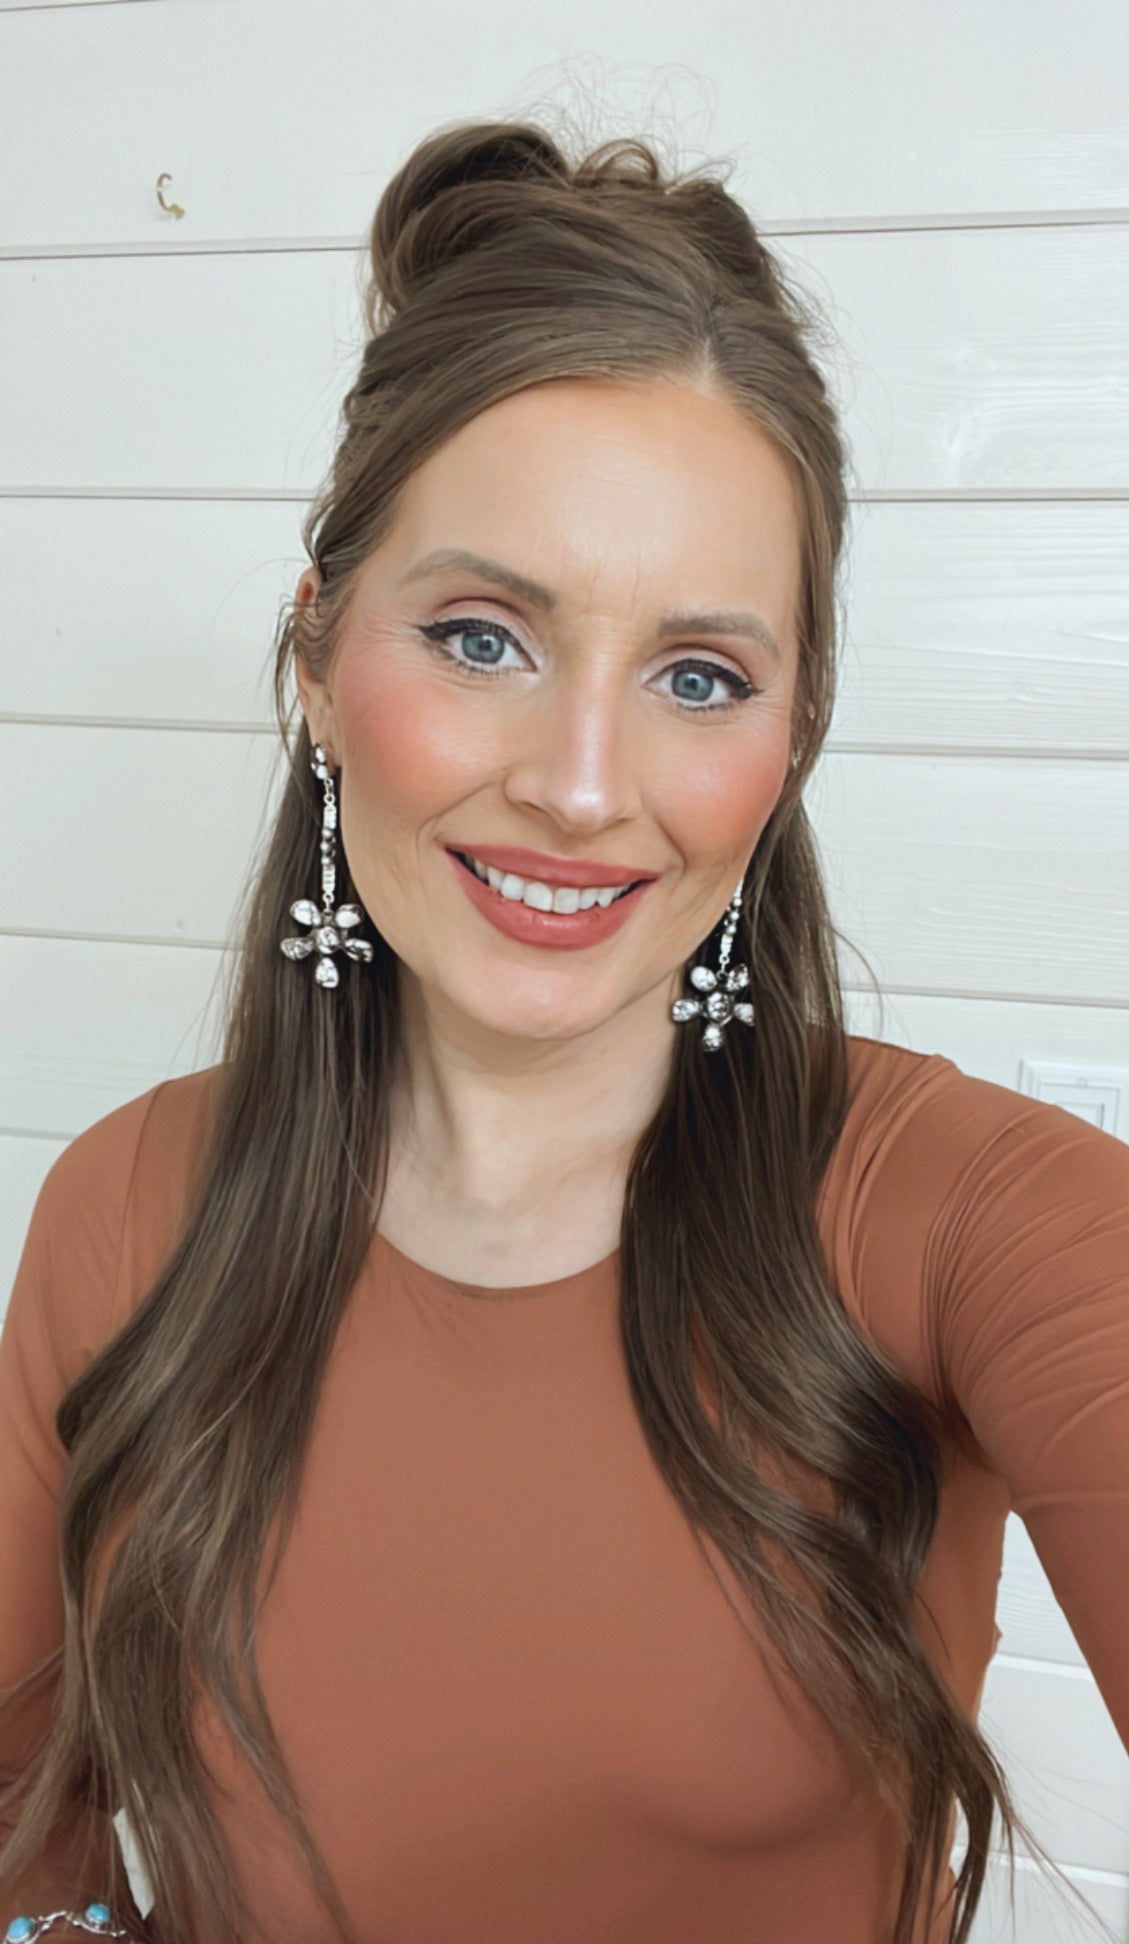 Soul Sister Flower Sterling Silver & Stone Earrings-Earrings-Krush Kandy, Women's Online Fashion Boutique Located in Phoenix, Arizona (Scottsdale Area)